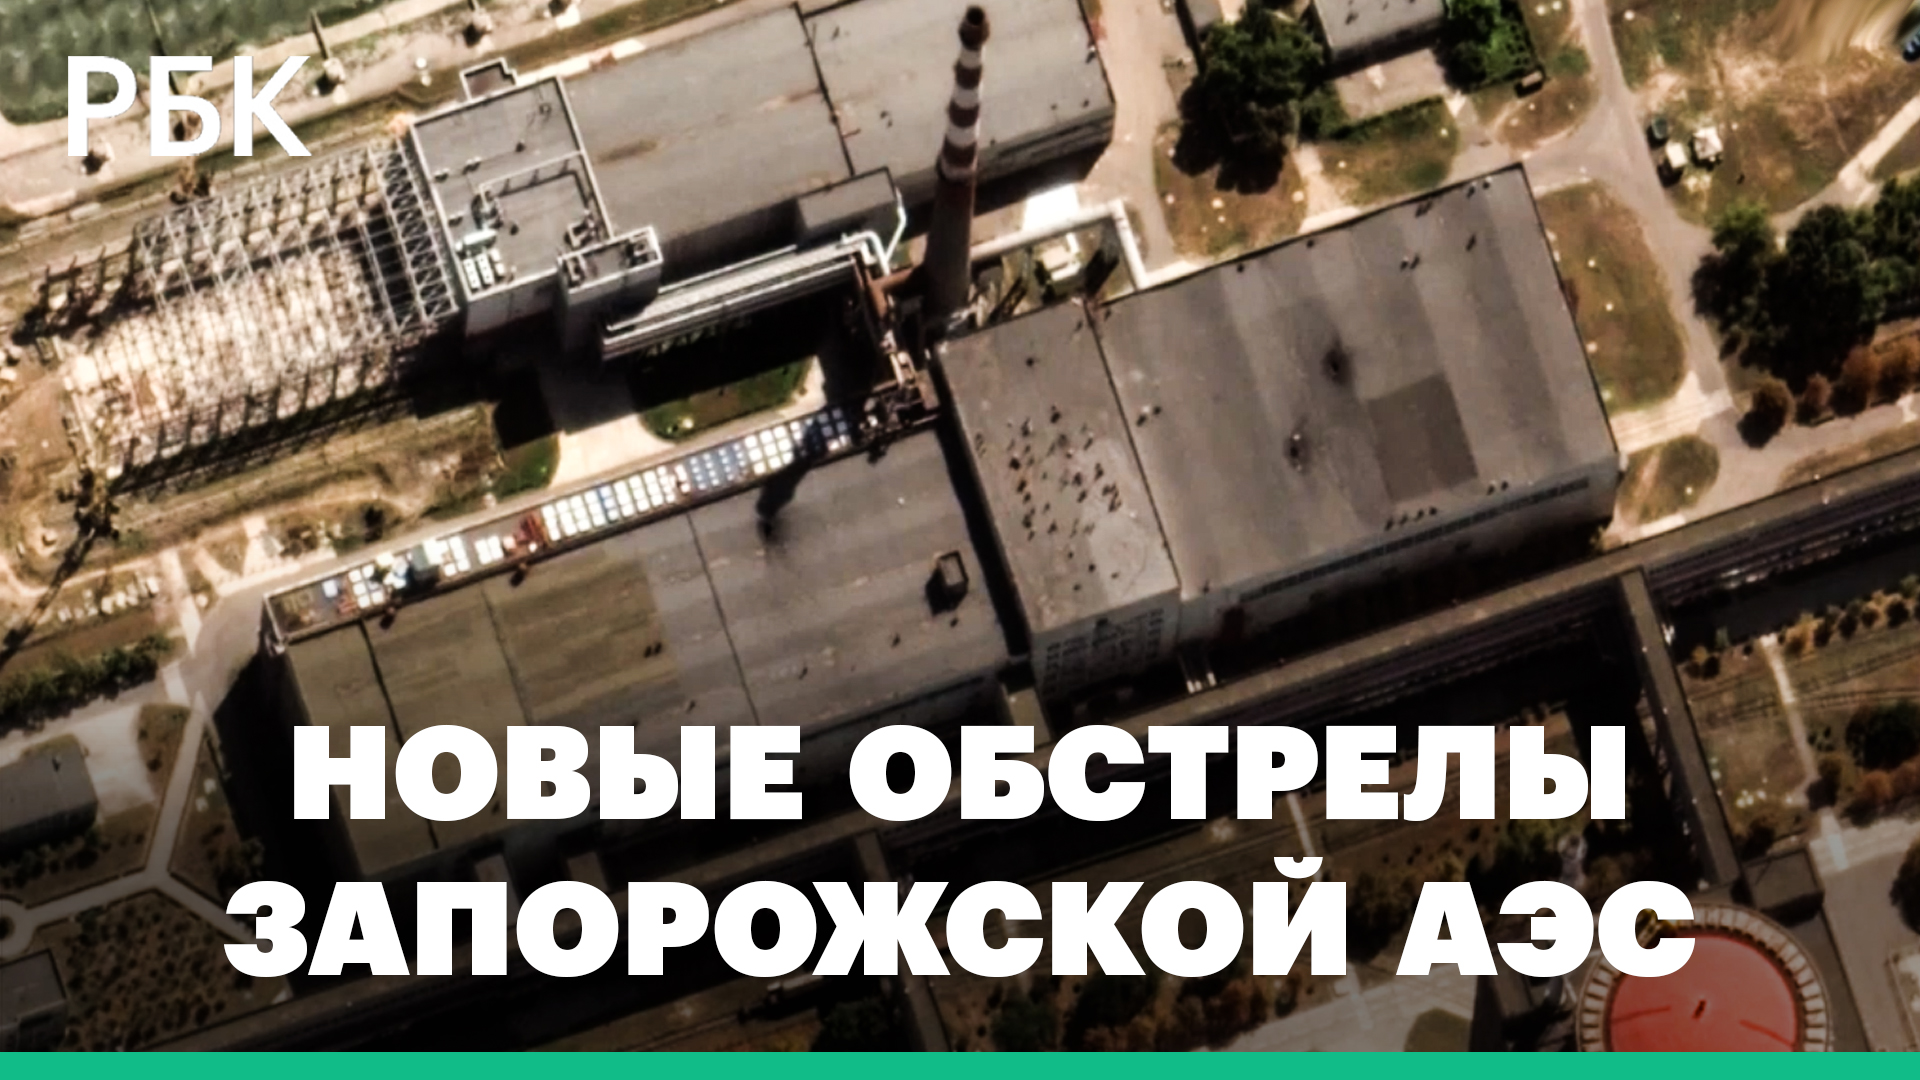 Власти Энергодара сообщили о новом обстреле Запорожской АЭС.Повреждения показали на снимках спутника